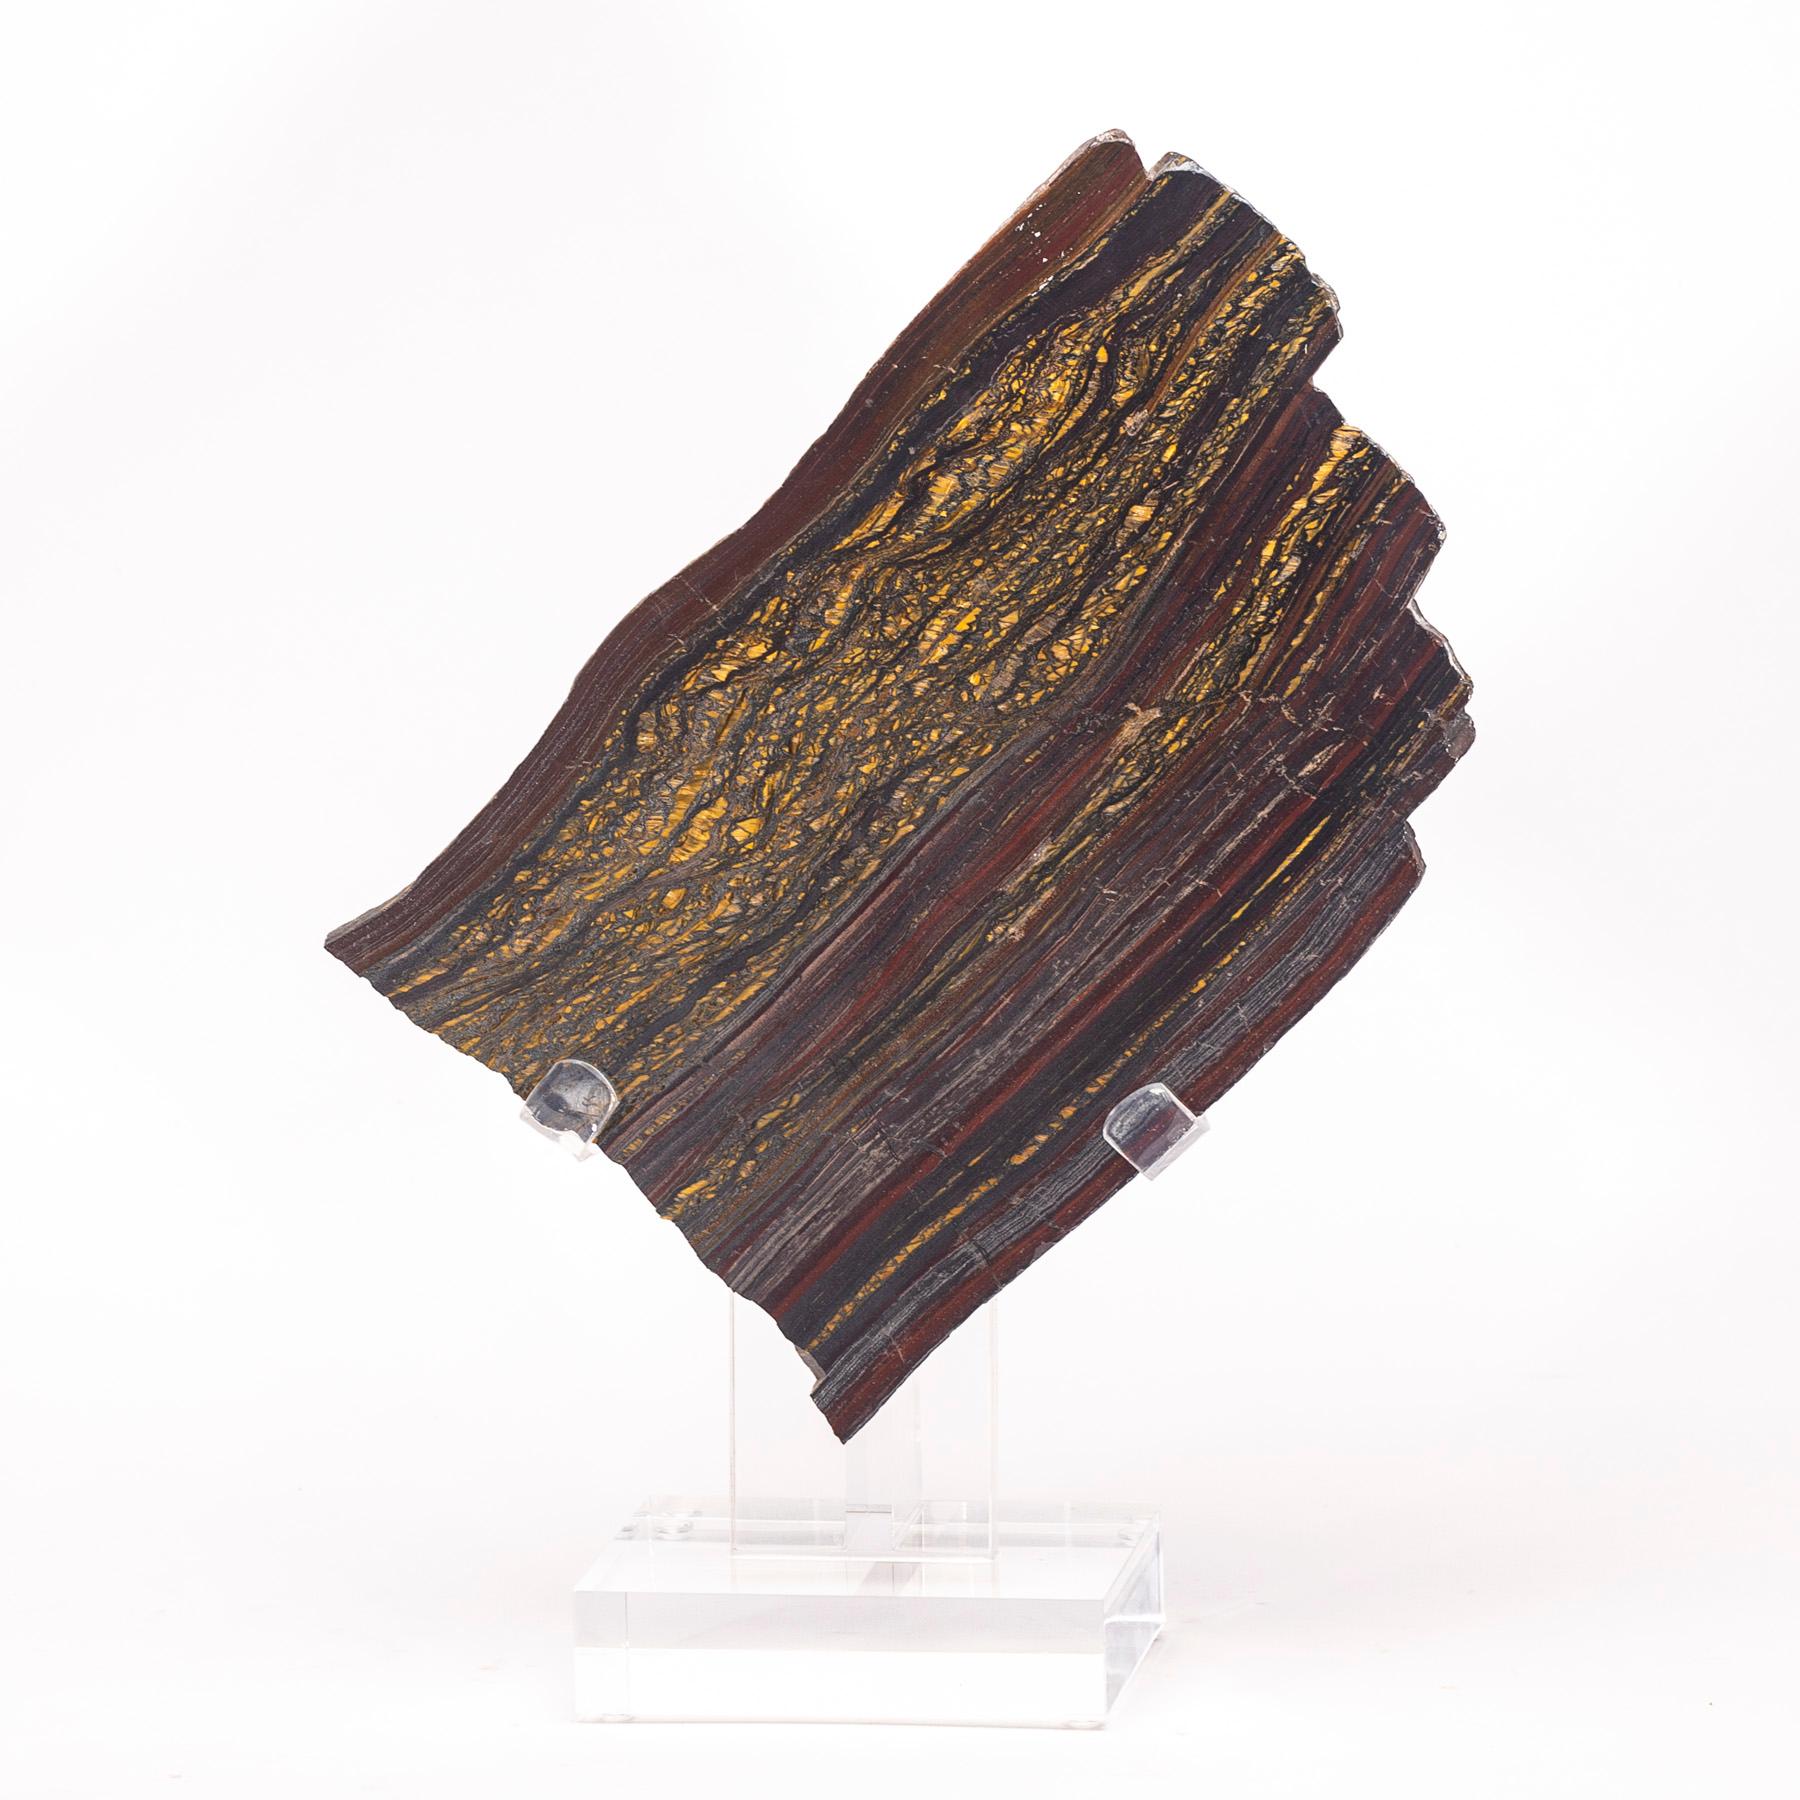 Wunderschöne gebänderte Tiger-Eisen-Platte aus Südafrika

Es ist eine Kombination aus Gold-Tigerauge, Hämatit und rotem Jaspis. Sein Name bezieht sich auf die Zusammensetzung des Steins: Tigerauge und Hämatit, ein eisenhaltiger Stein.
 